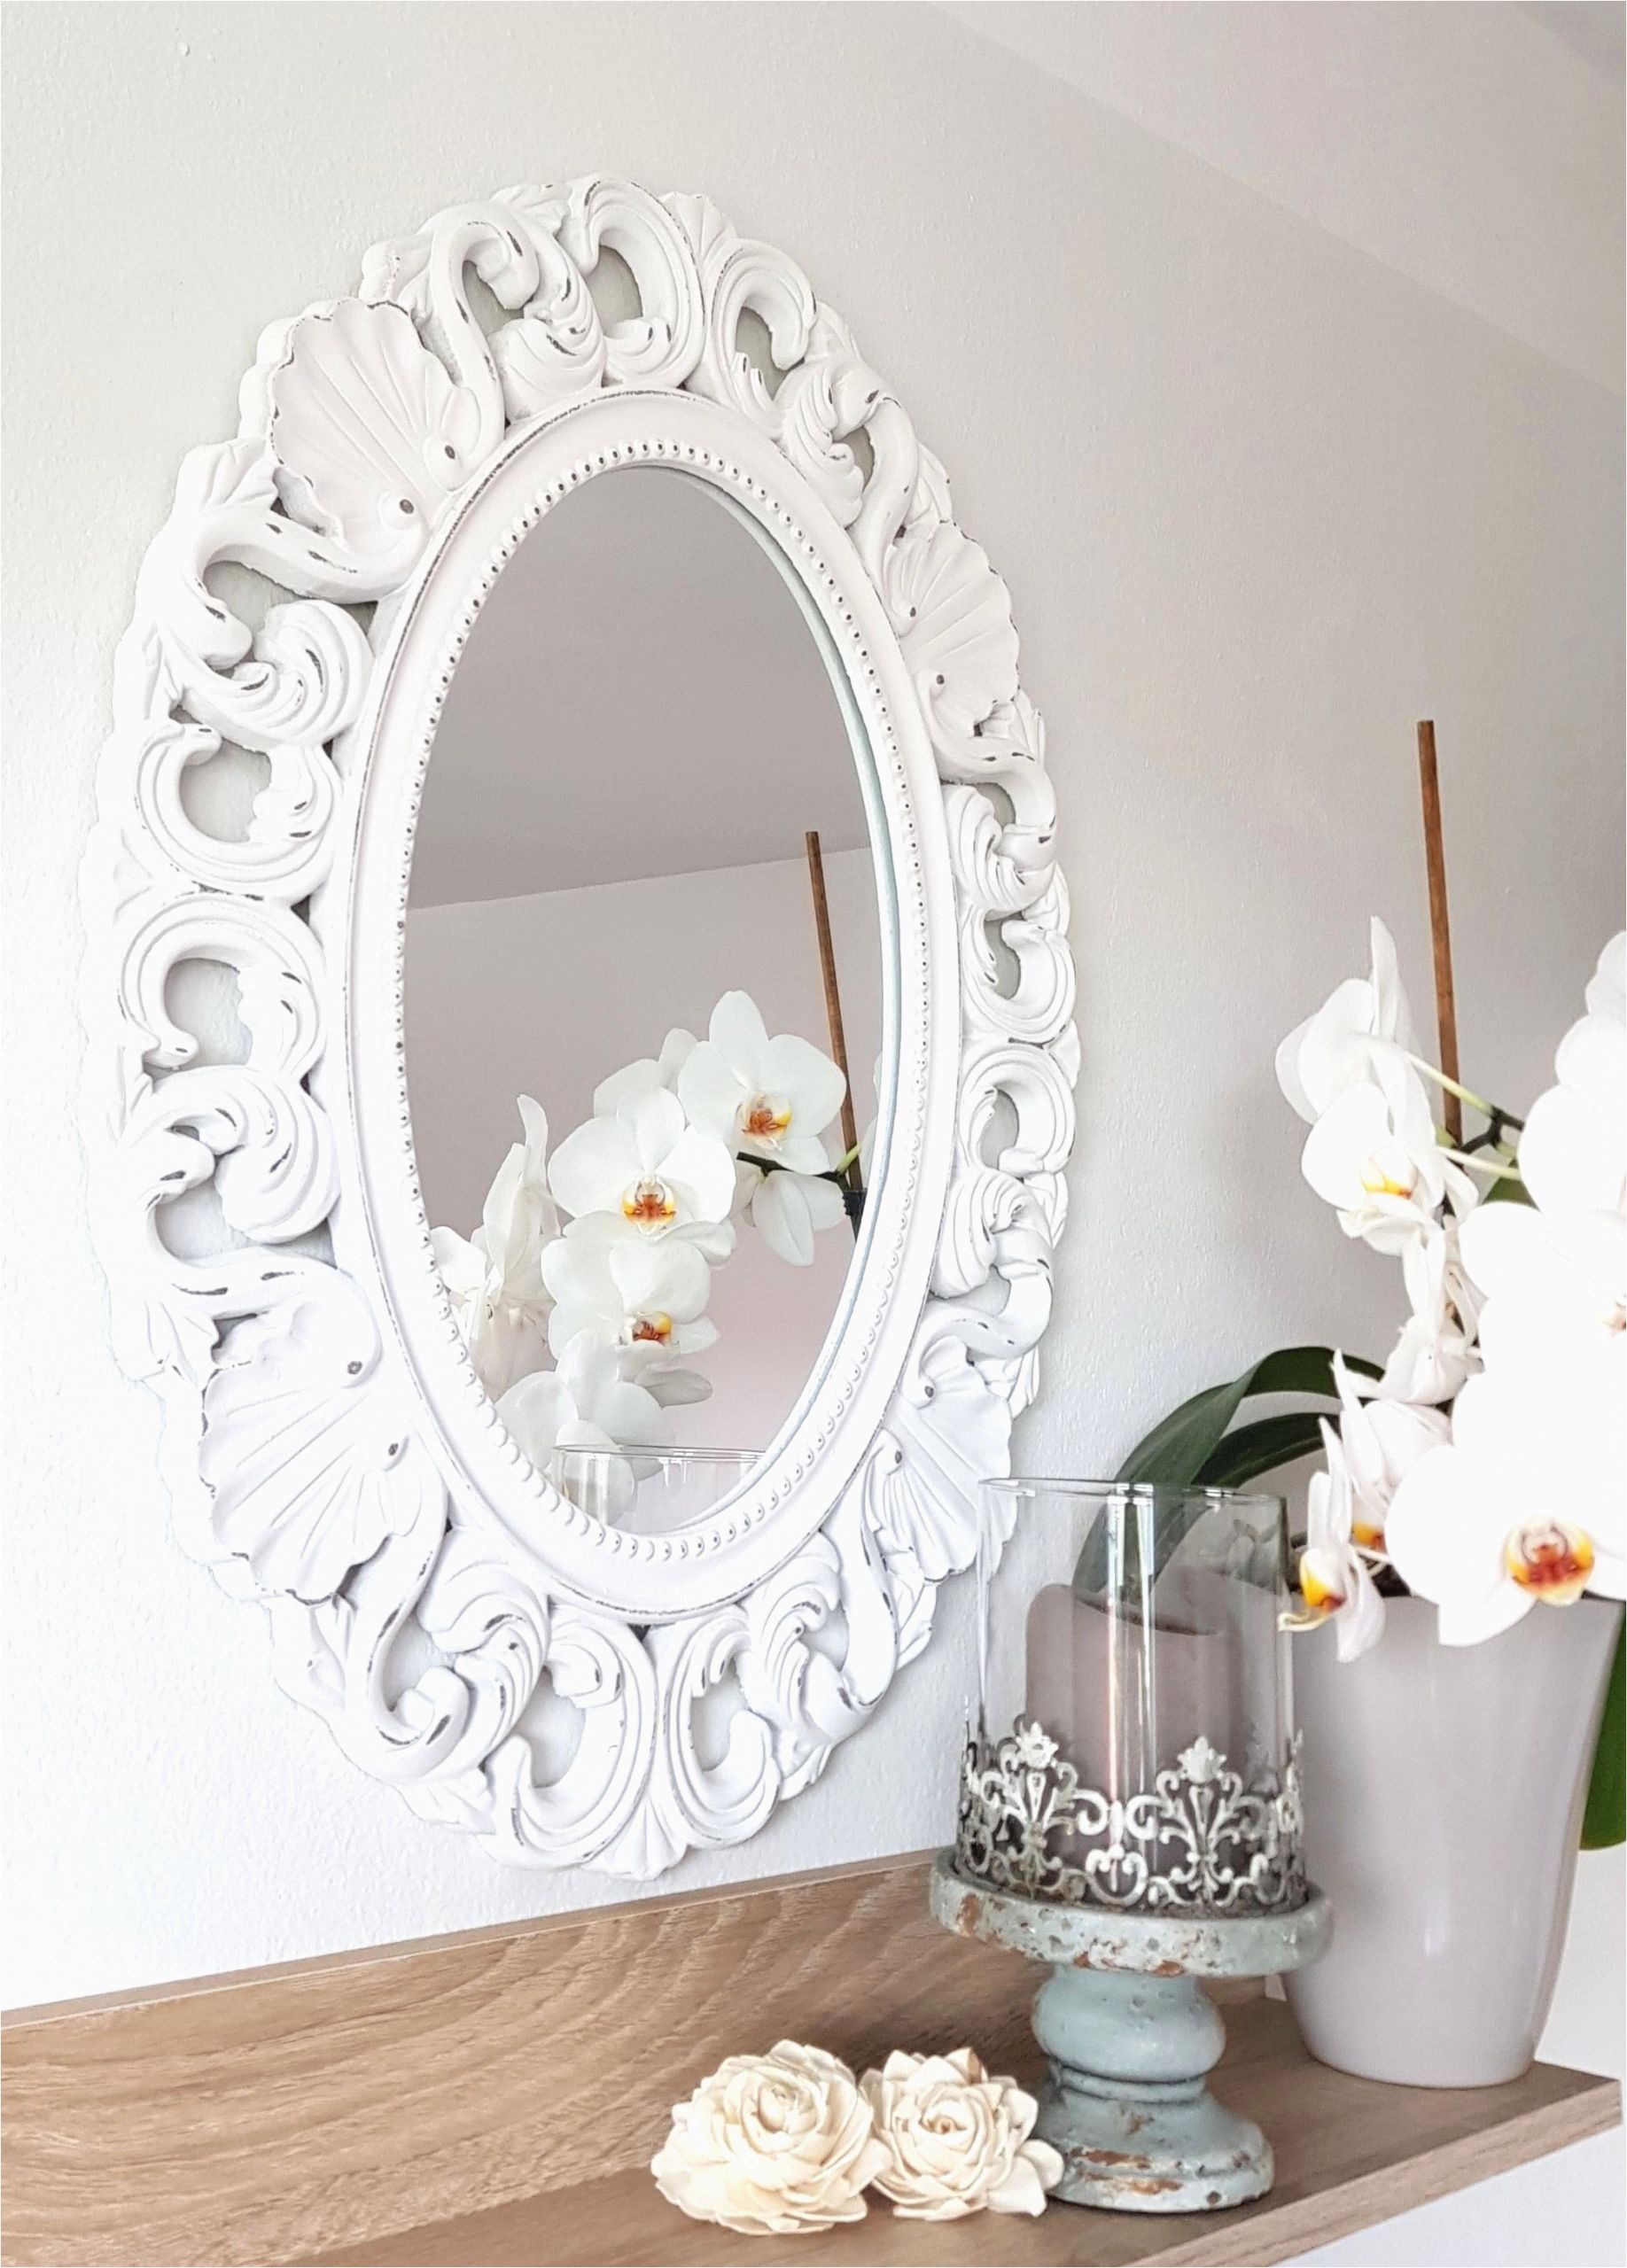 spiegel silber modern frisch silber spiegel mit einfaches zuhause spiegel schlafzimmer 0d design of spiegel silber modern